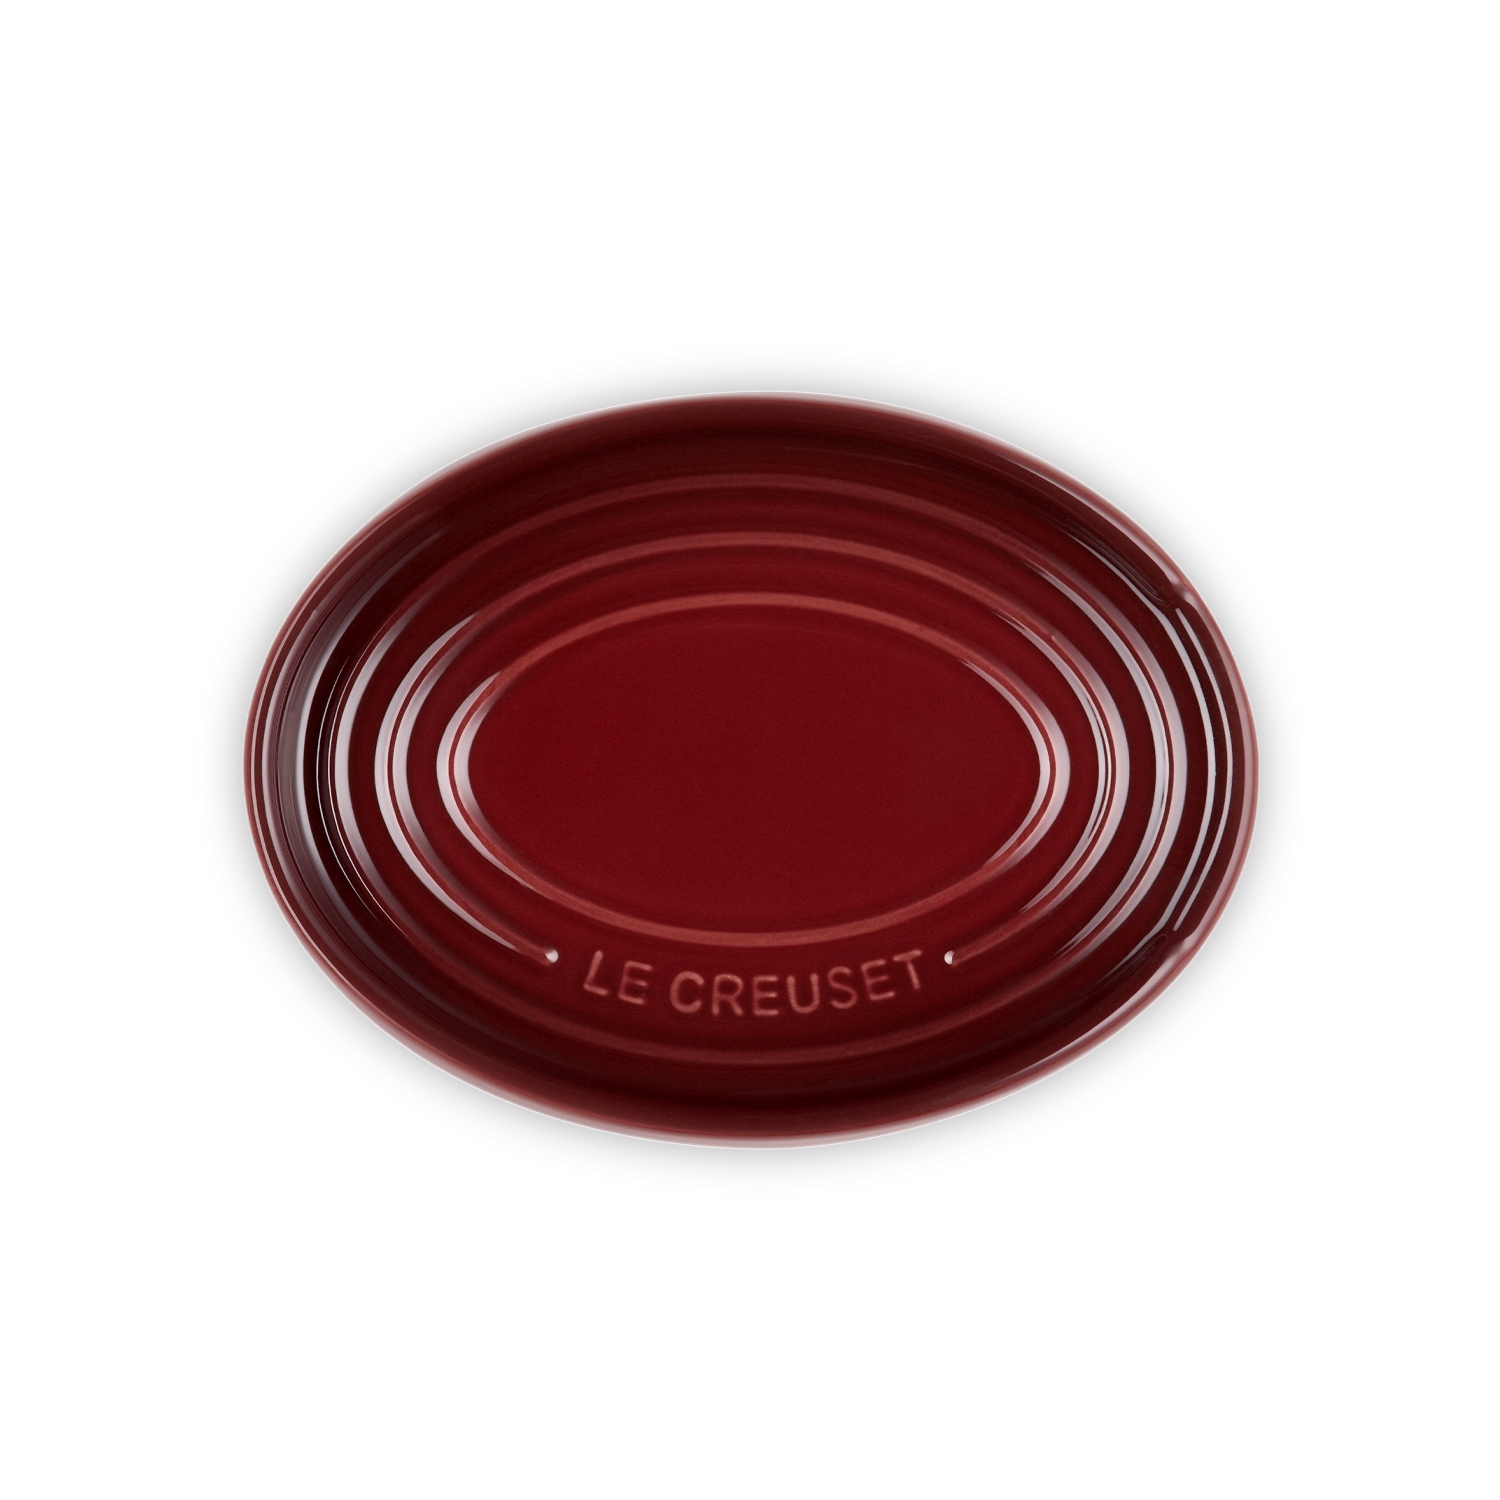 Le Creuset - Spoon Rest oval 16 cm